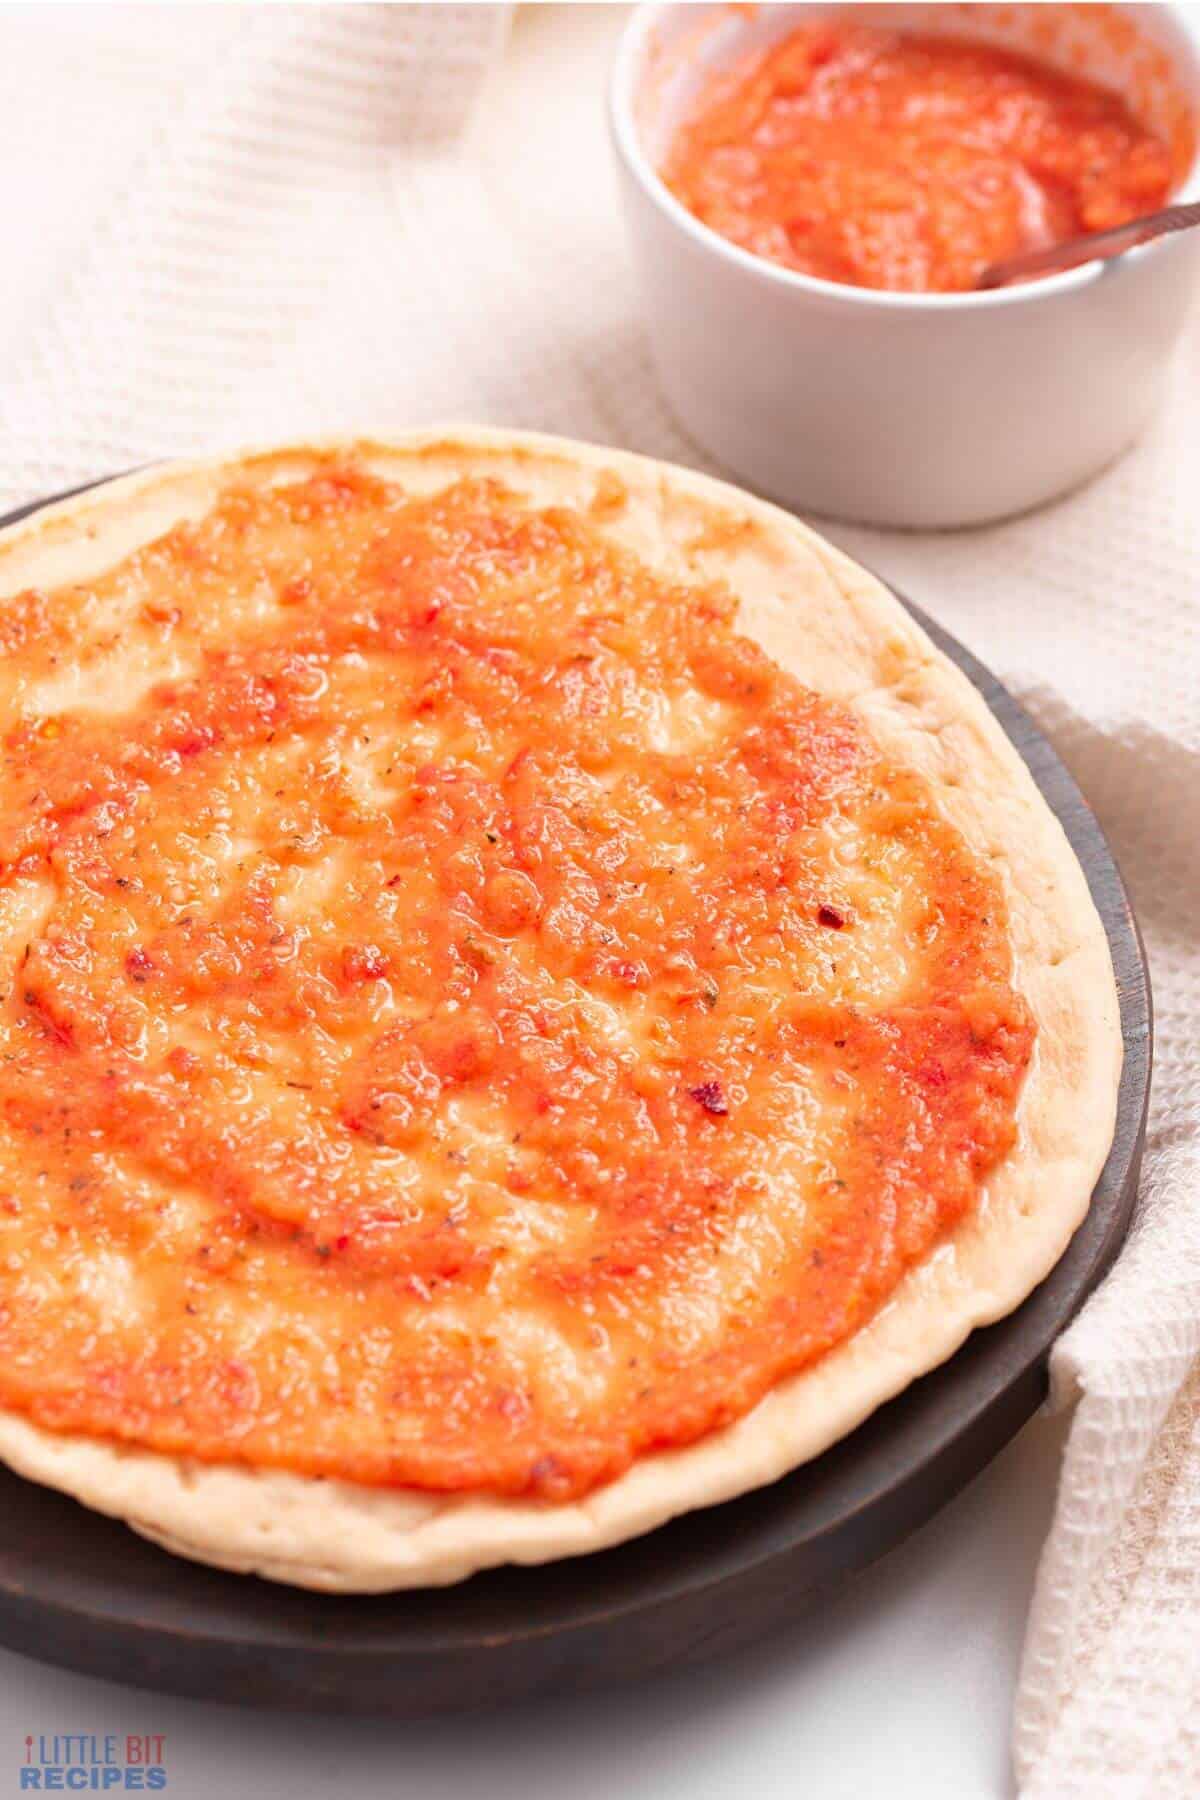 sauce spread on pizza crust.